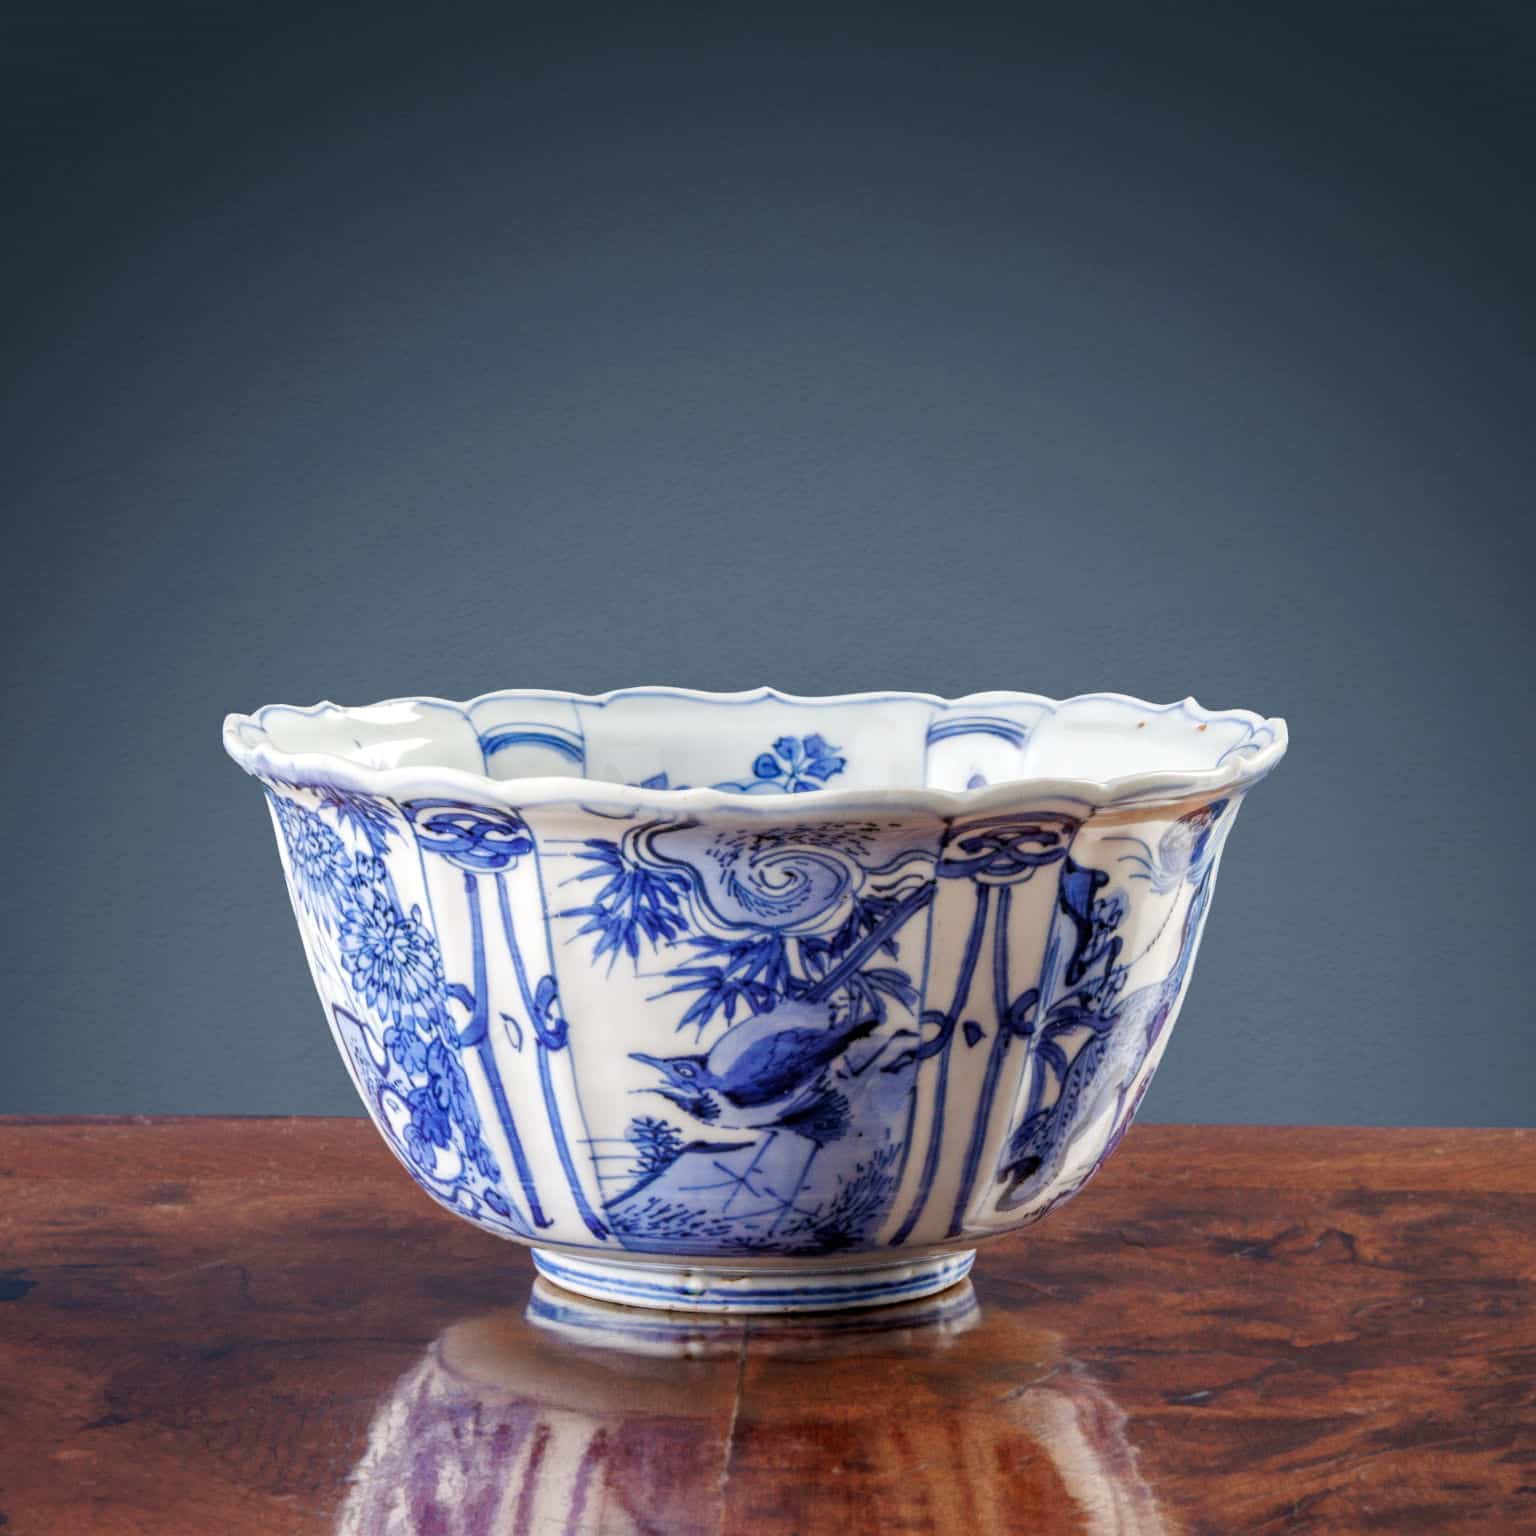 Ciotola in porcellana di Kraak, Cina epoca Ming, periodo Wanli - immagine 1